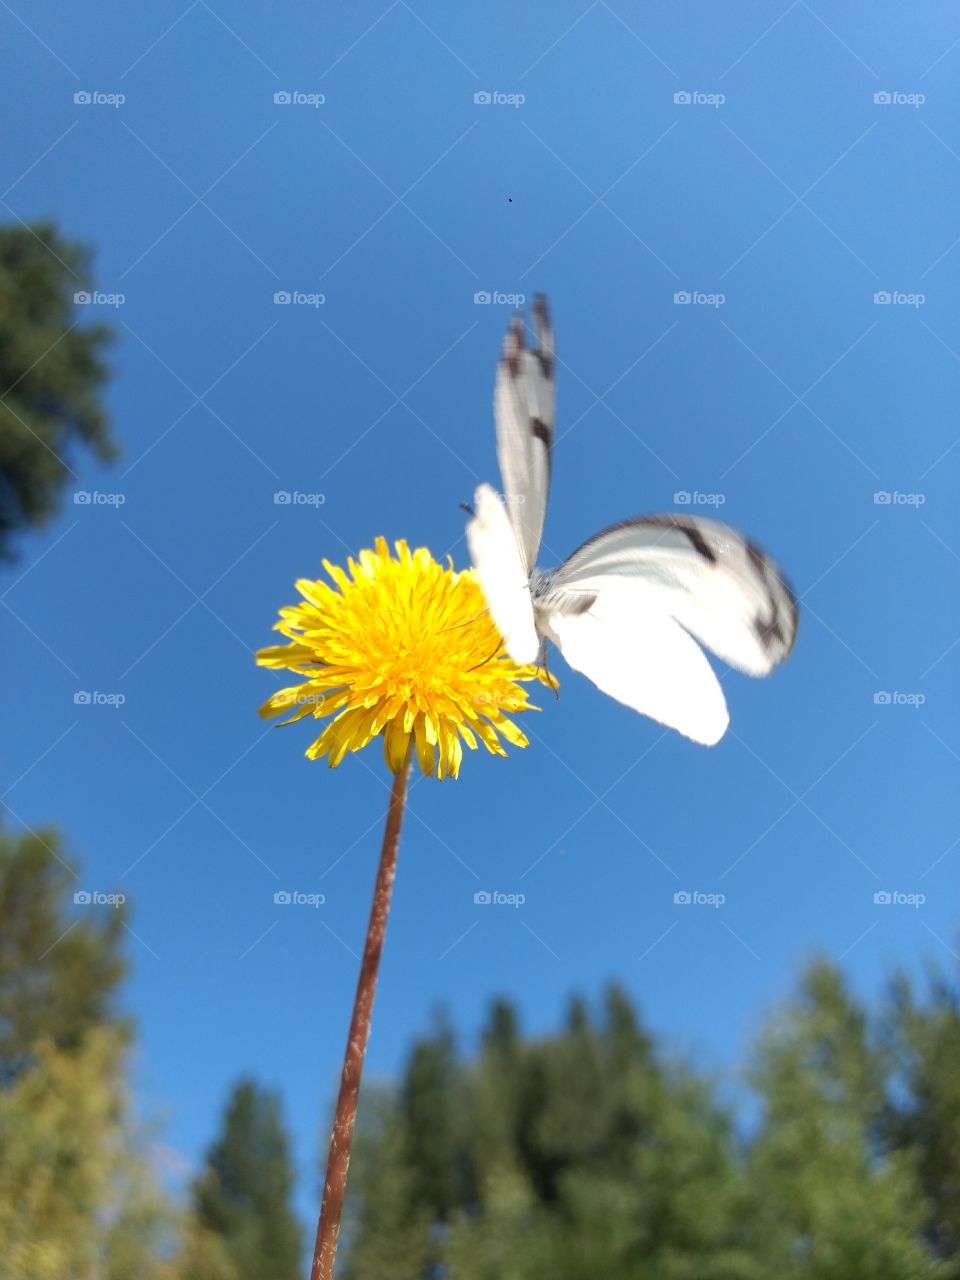 butterfly landing on a dandelion